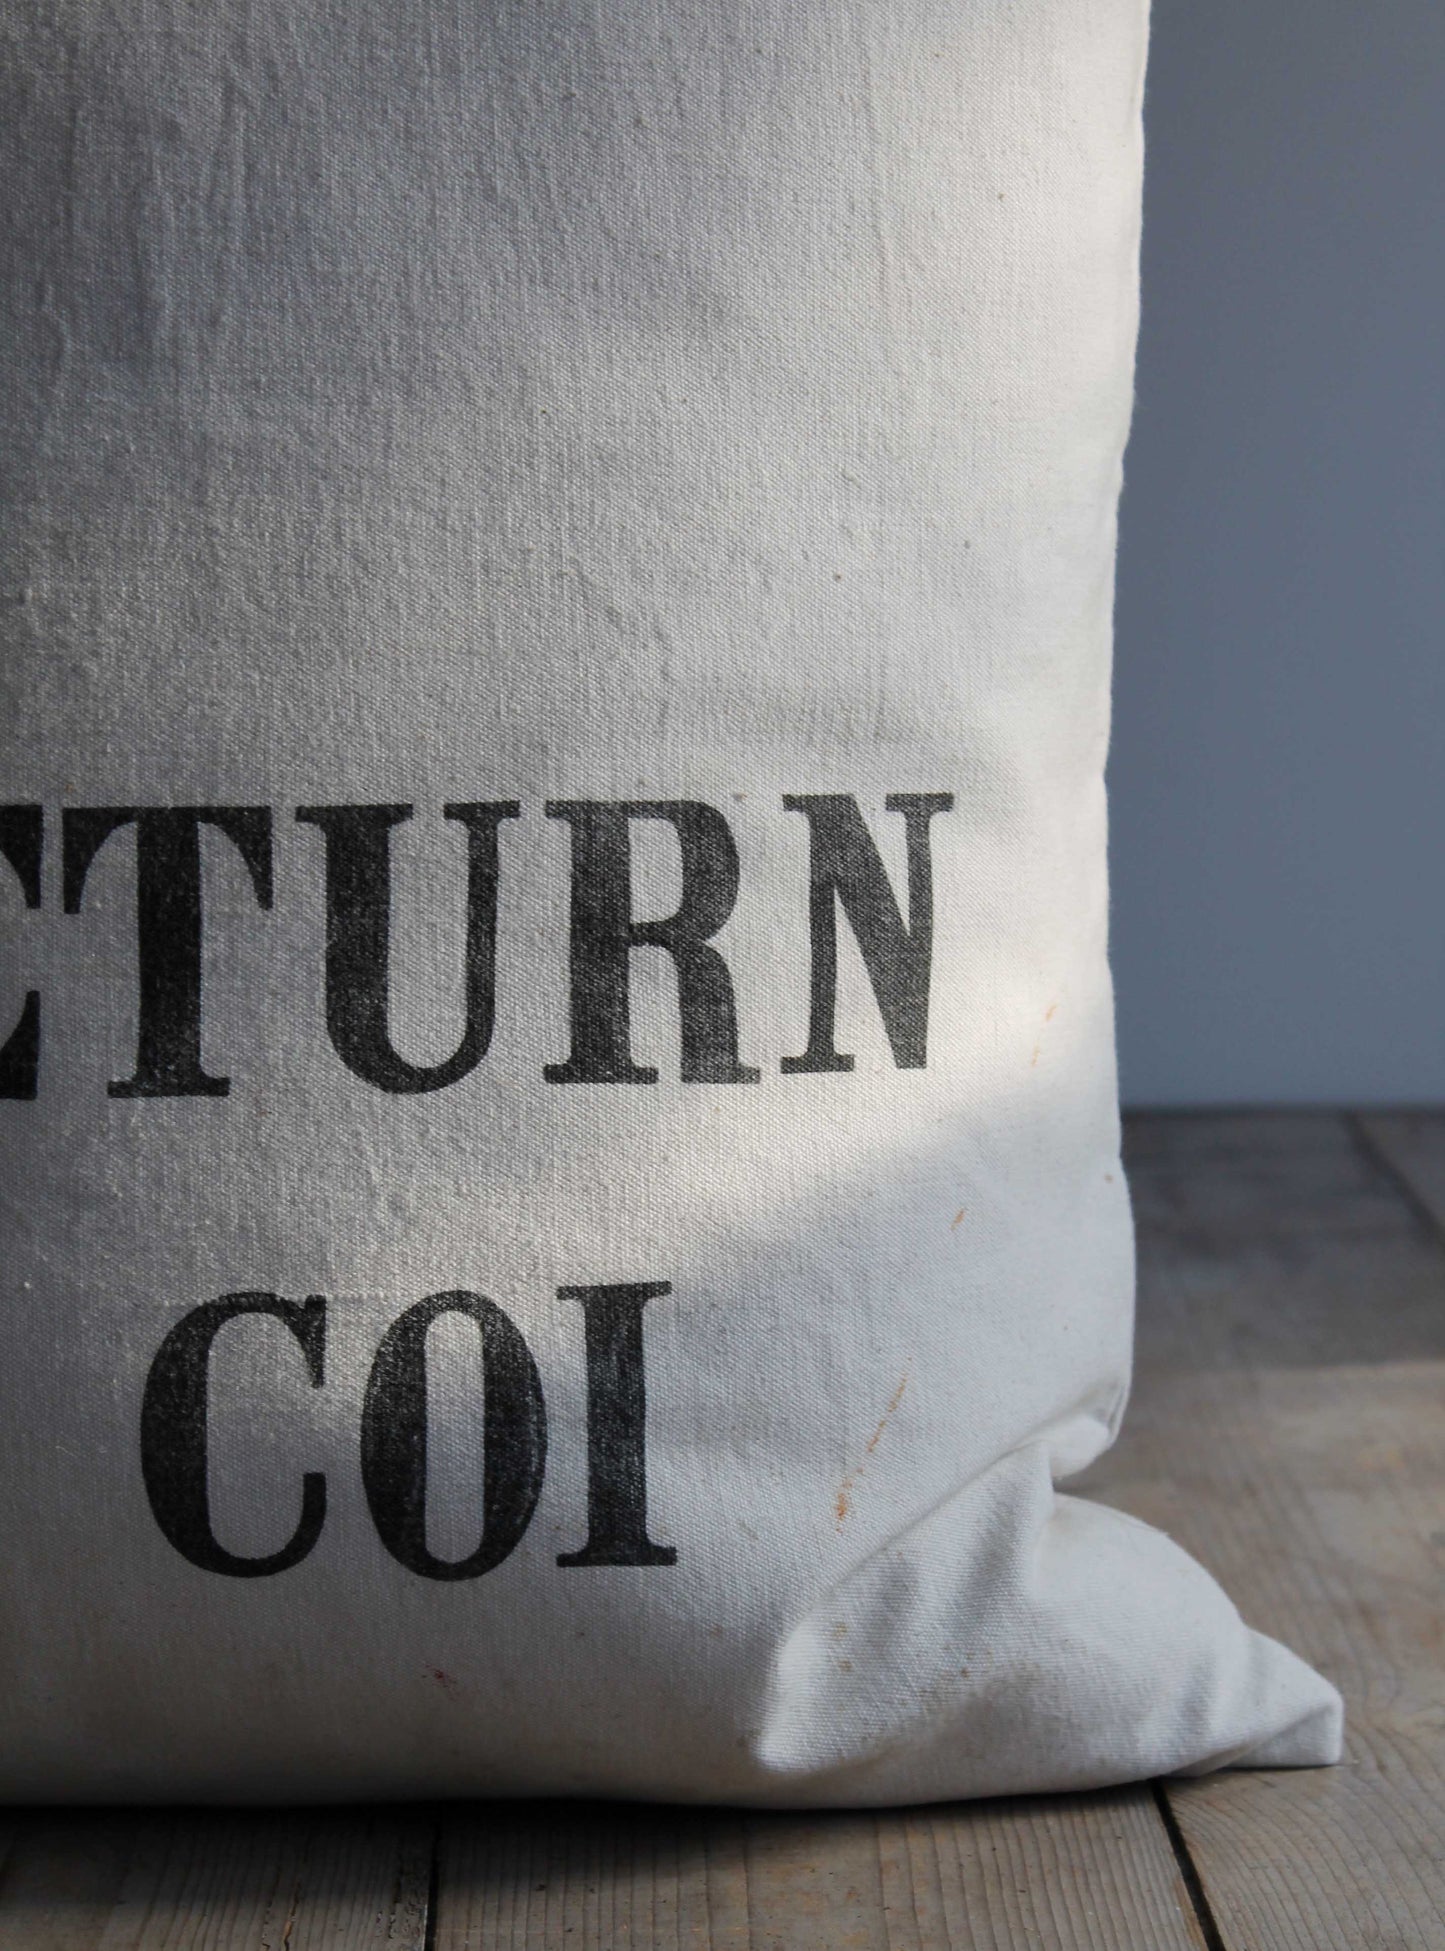 Vintage Return Cushion